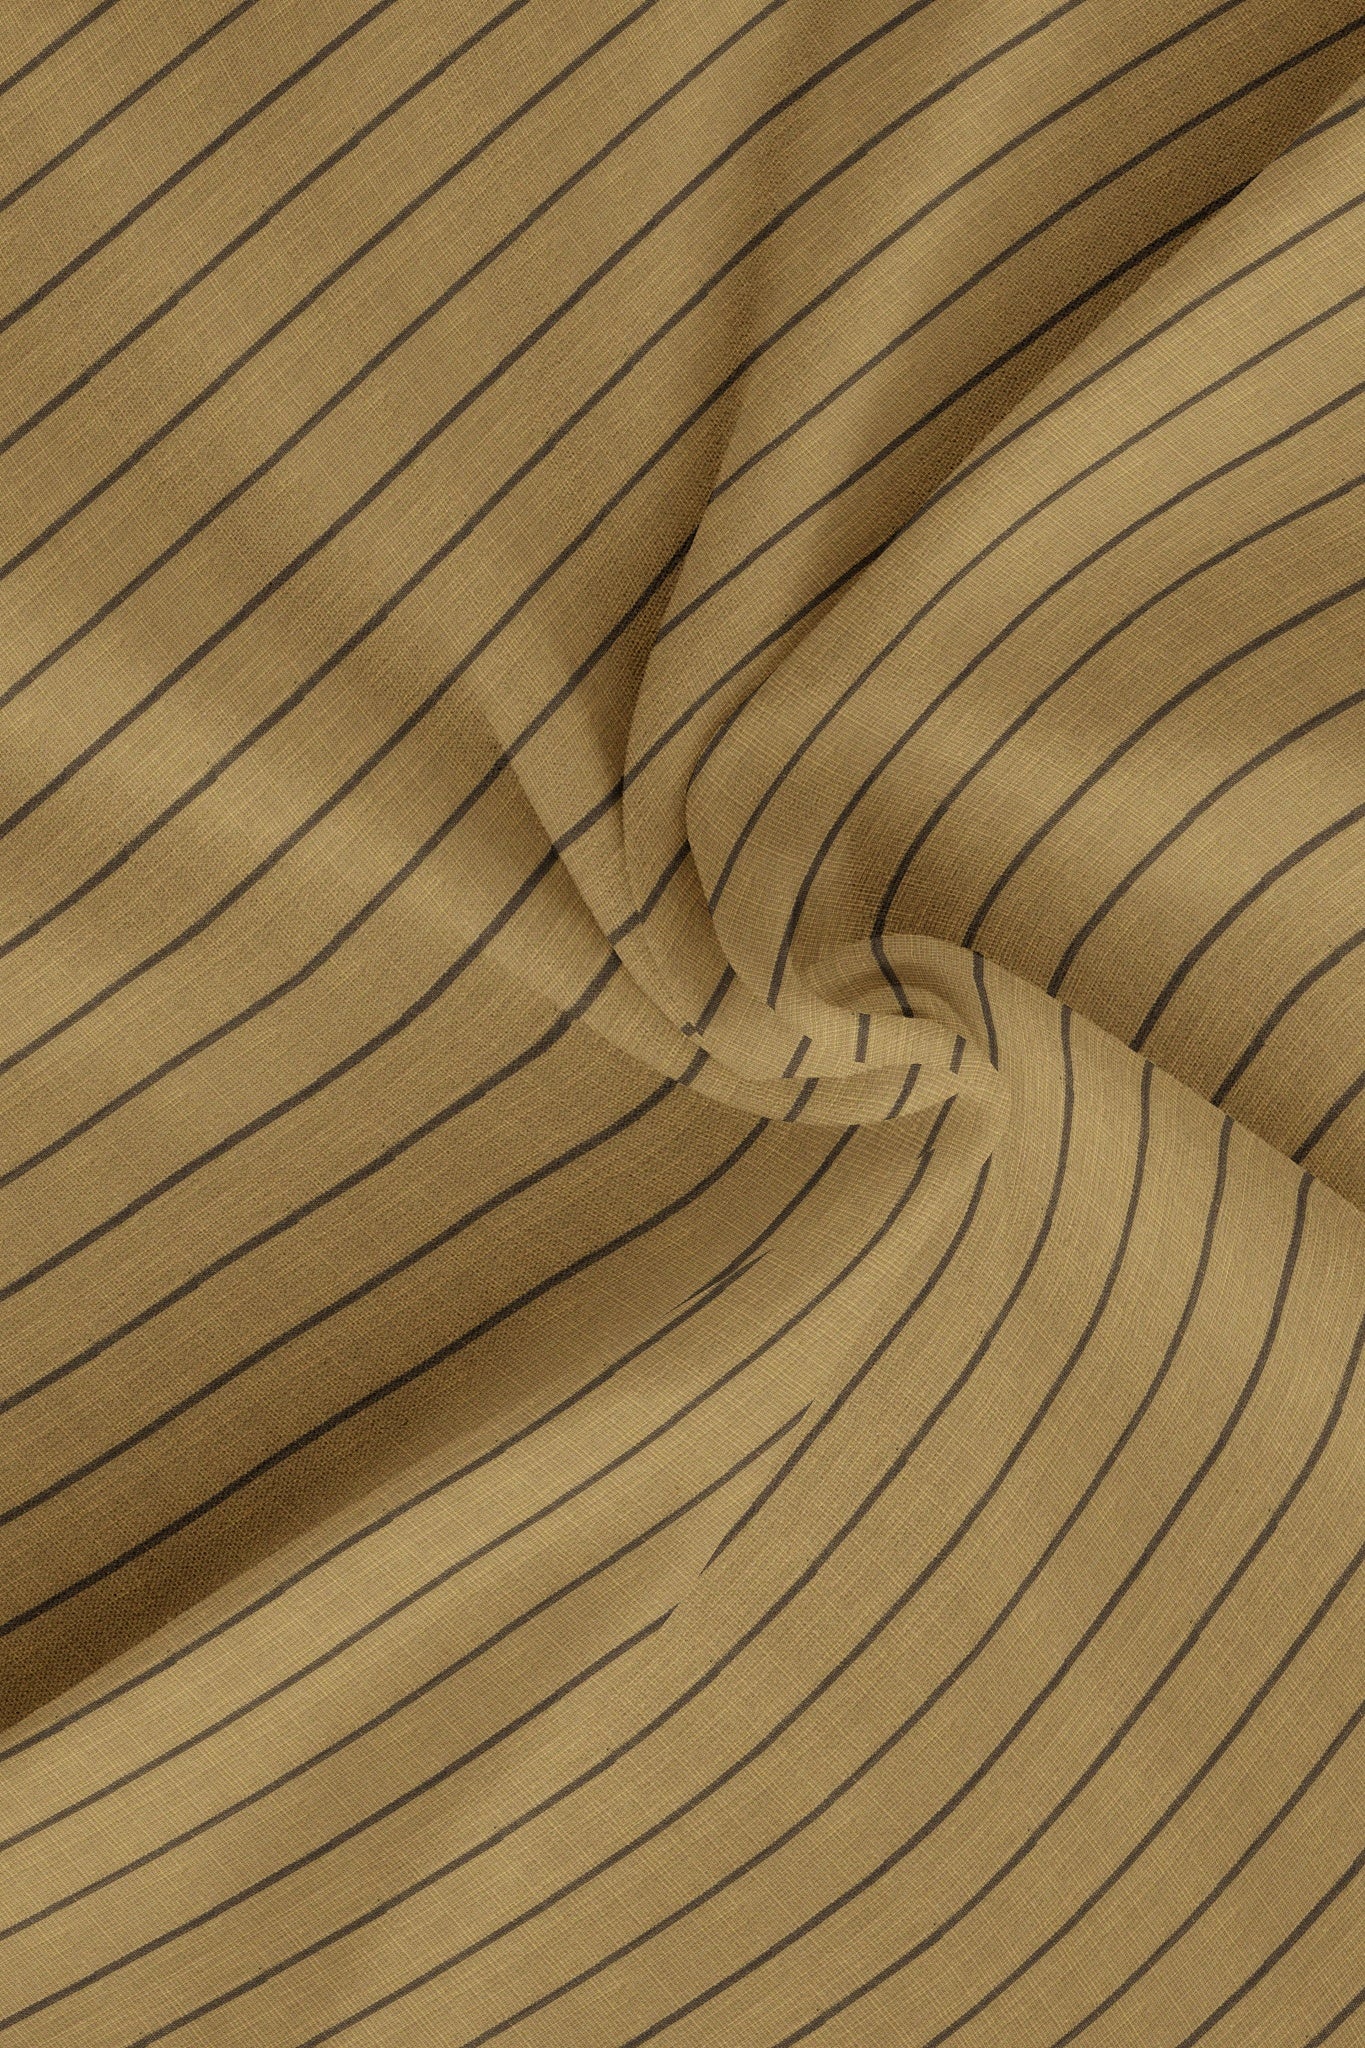 British Khaki and Dark Coffee Brown Wide Chalk Stripes Luxurious Linen Shirt